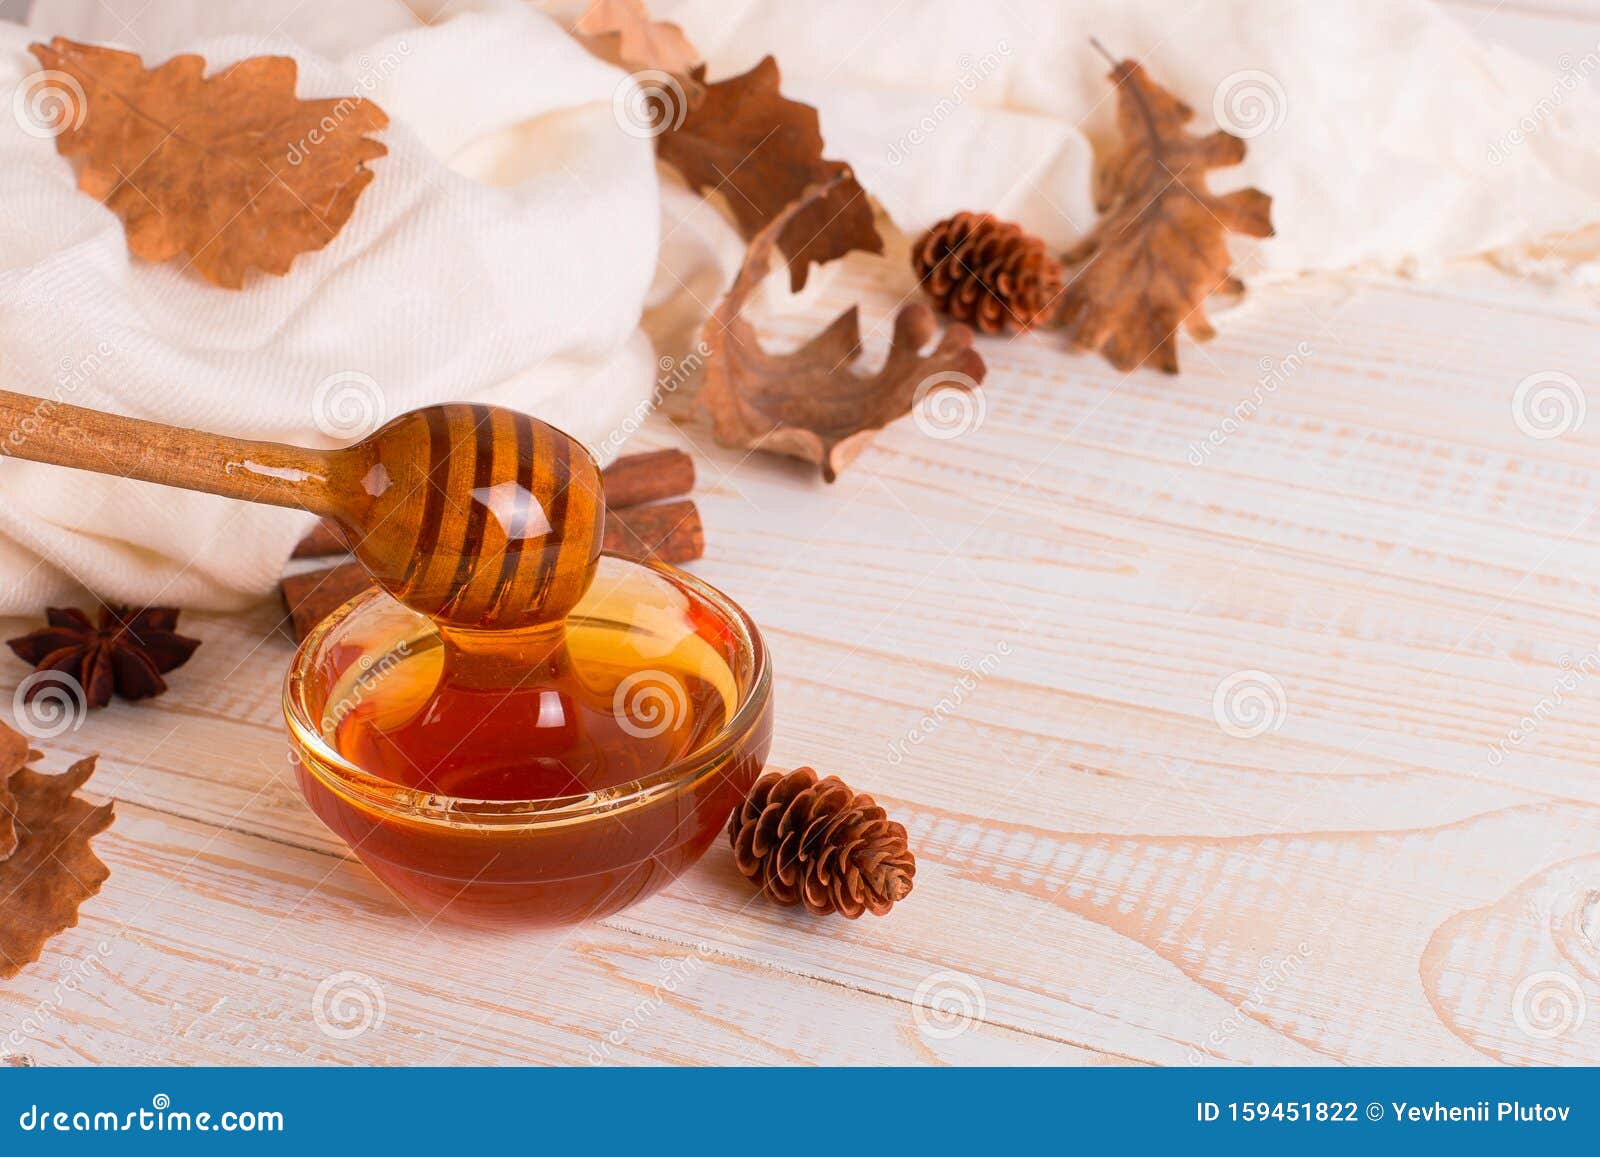 Miel rustica con palo de madera